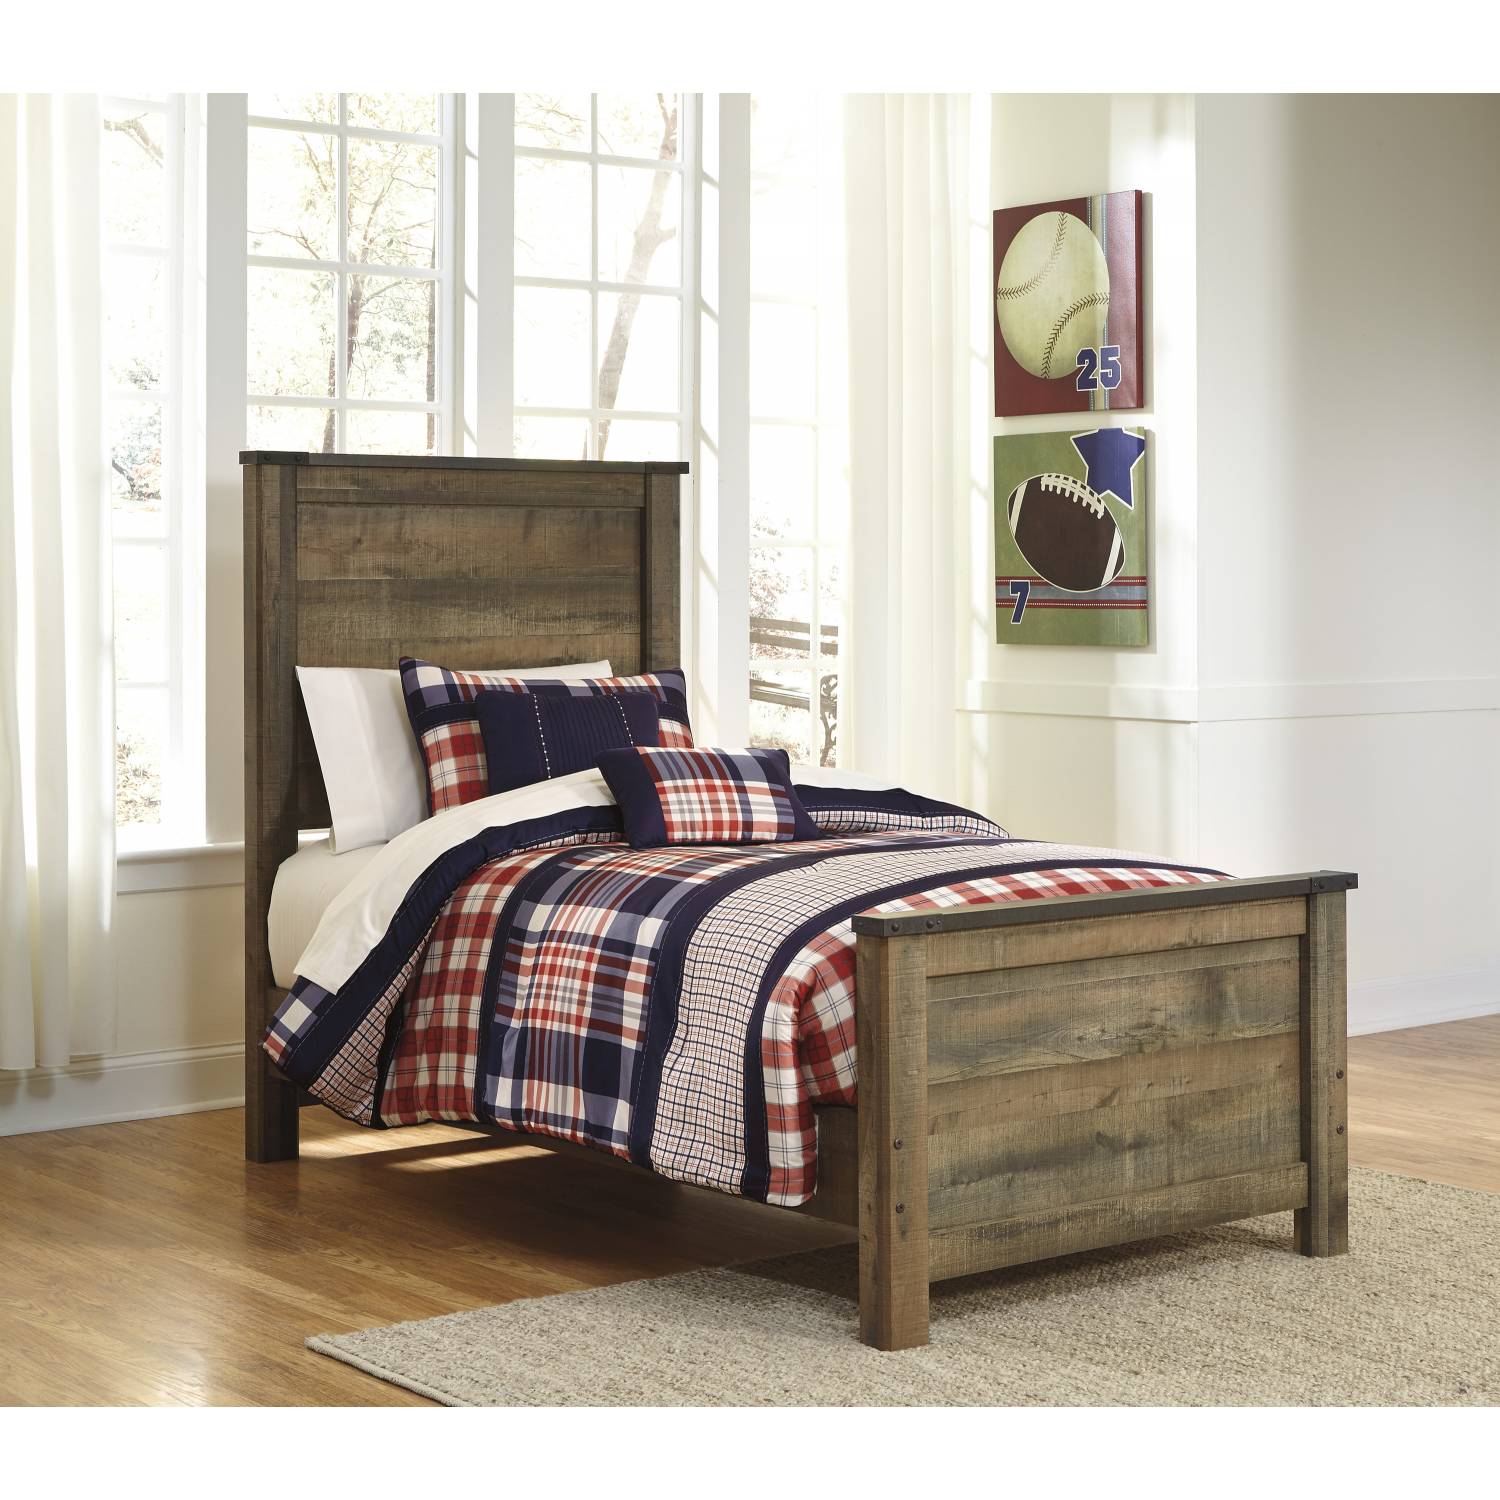 Кровать Ashley Furniture